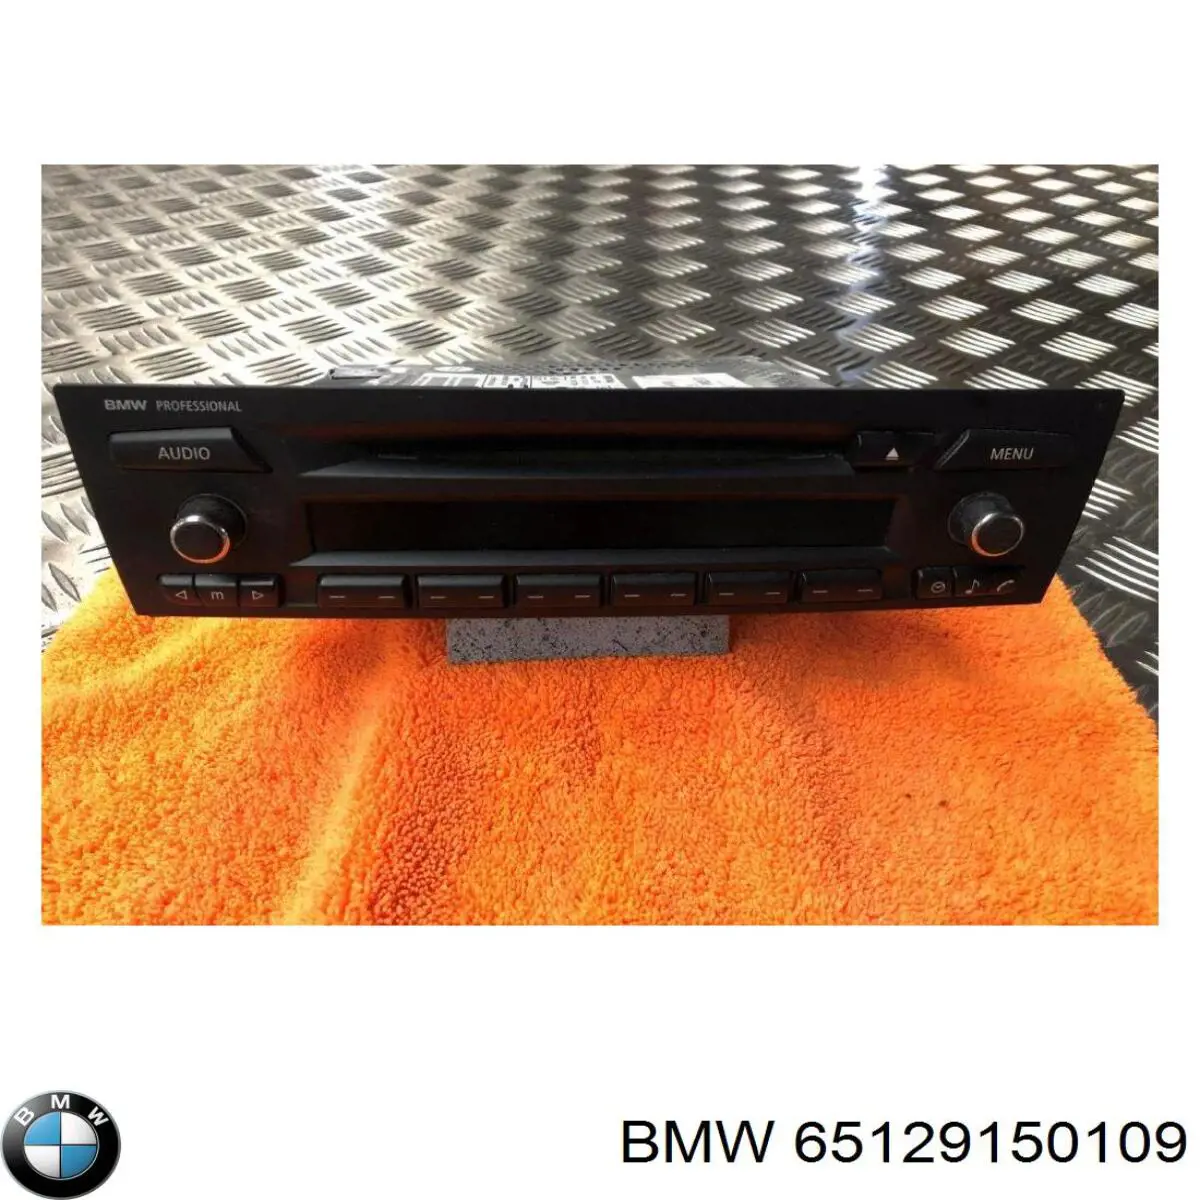 65129132214 BMW radio (radio am/fm)